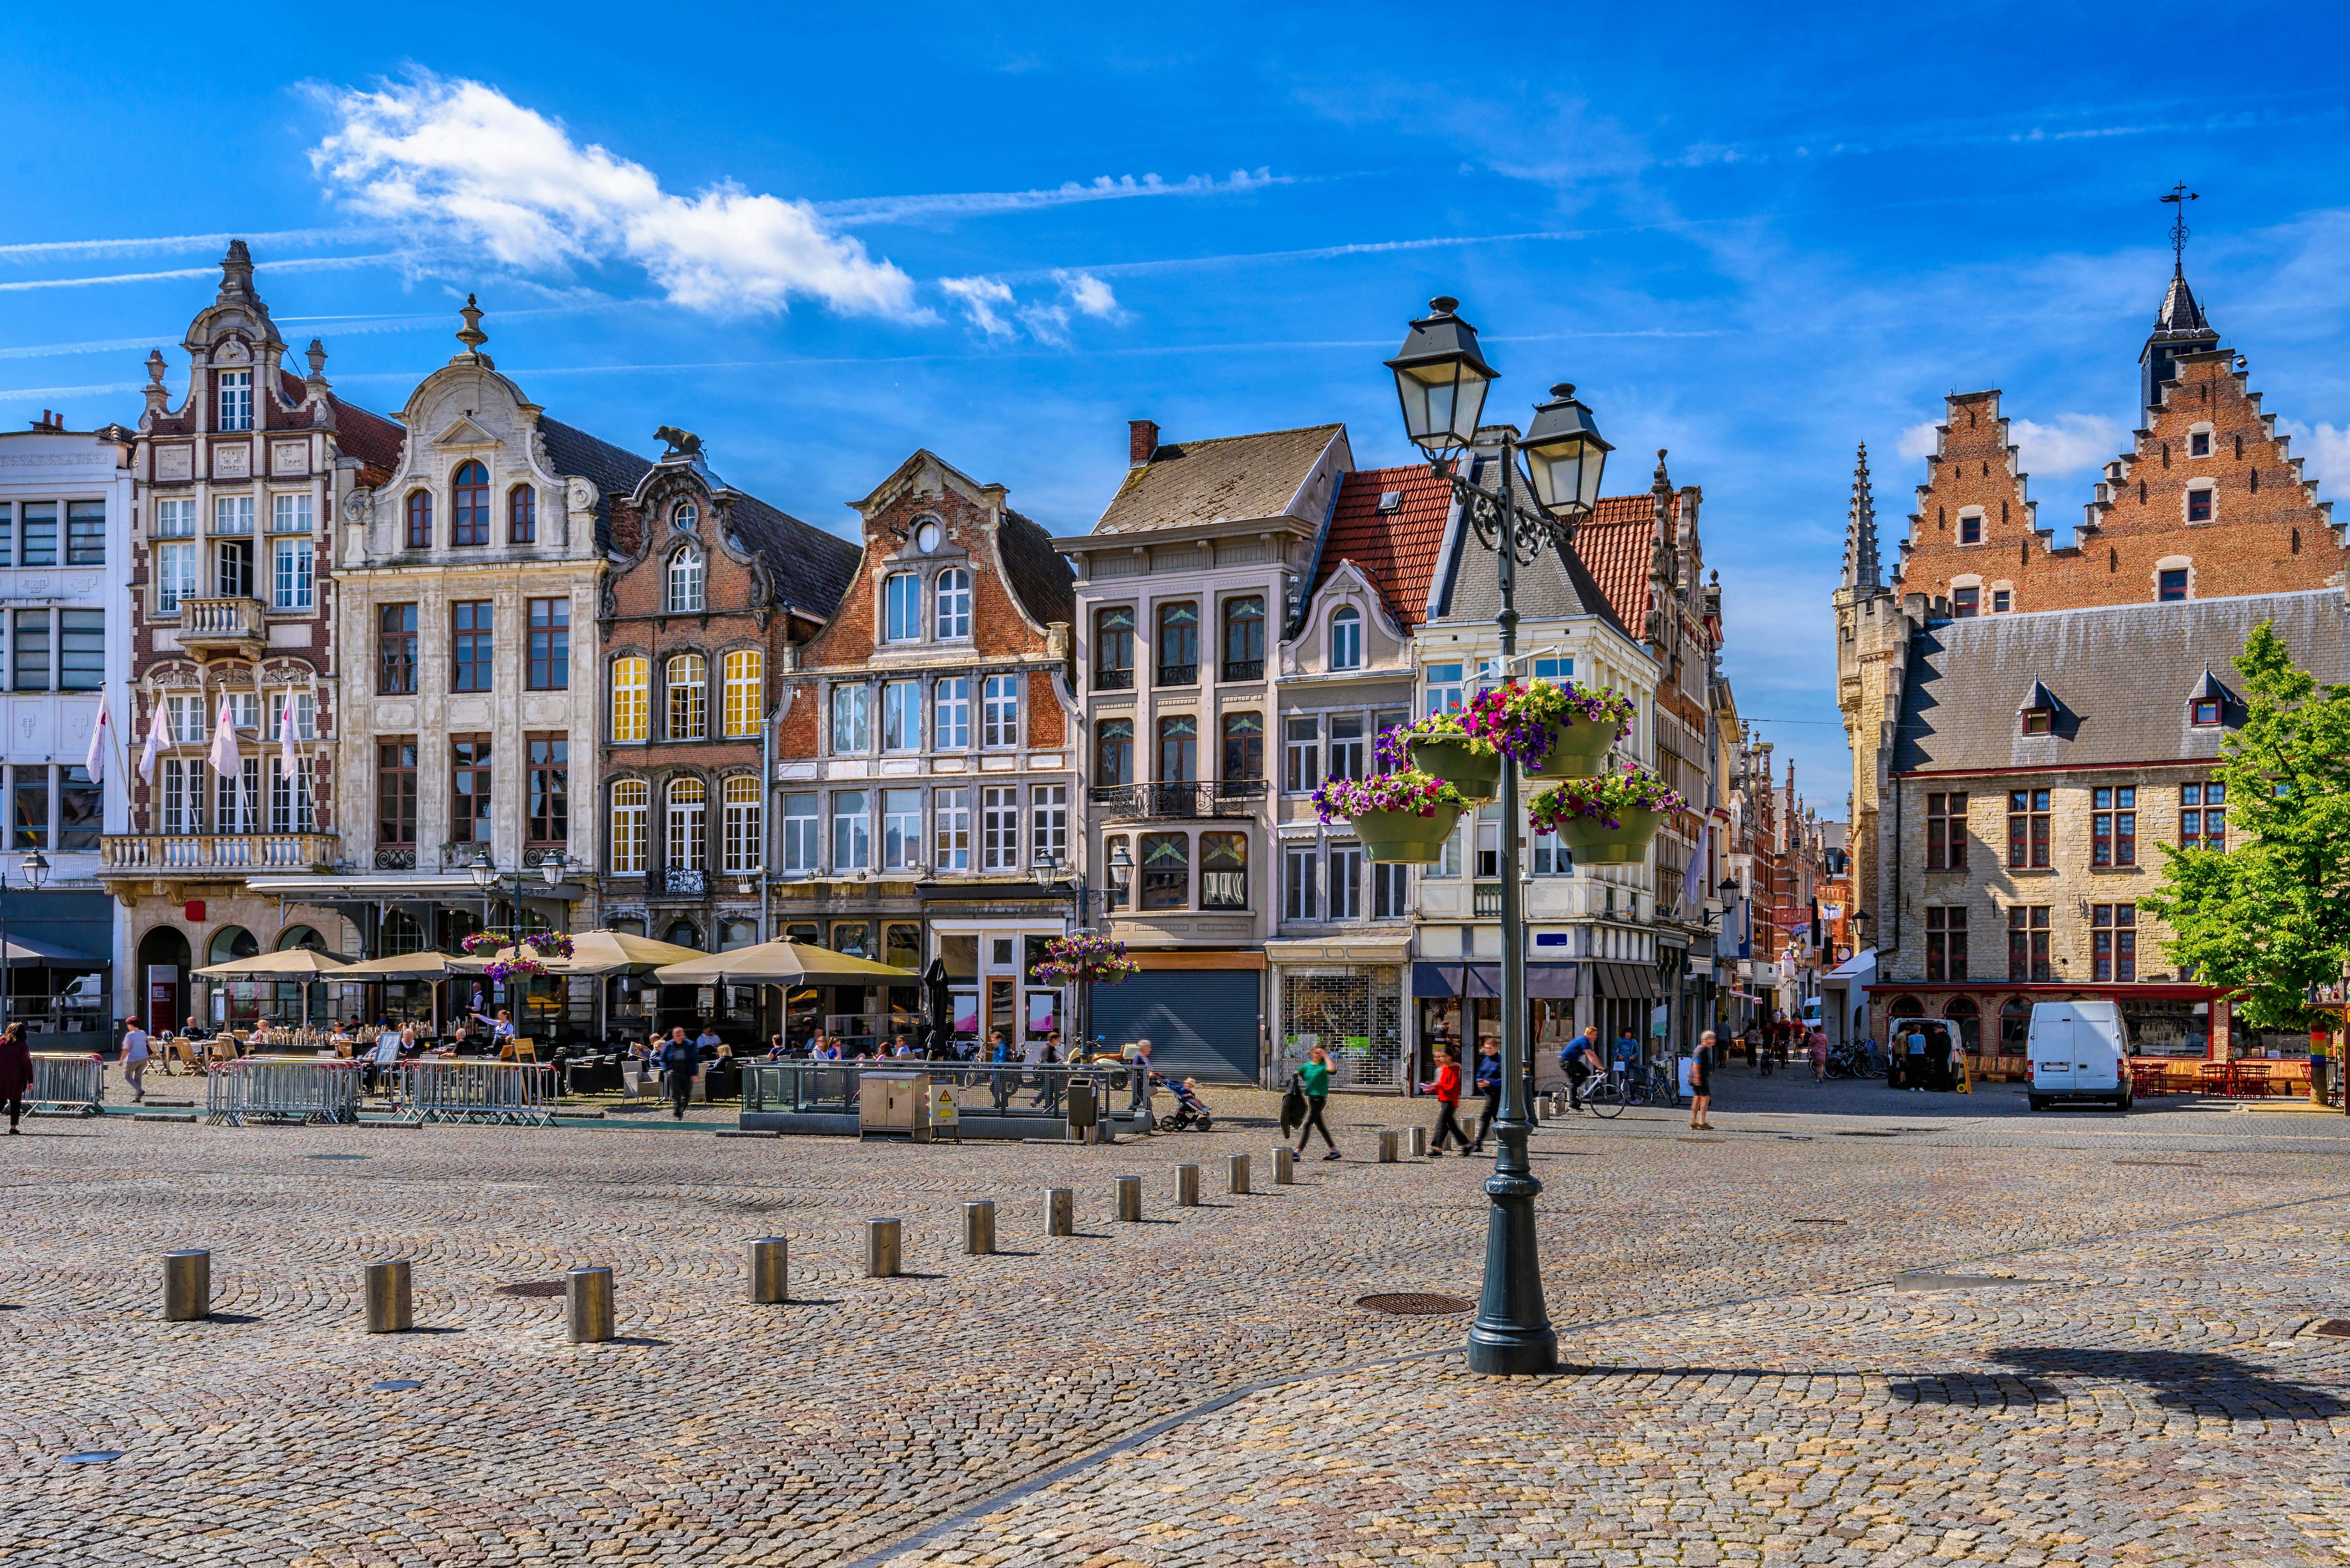 Smart wandeling in Mechelen met een interactief stadsspel